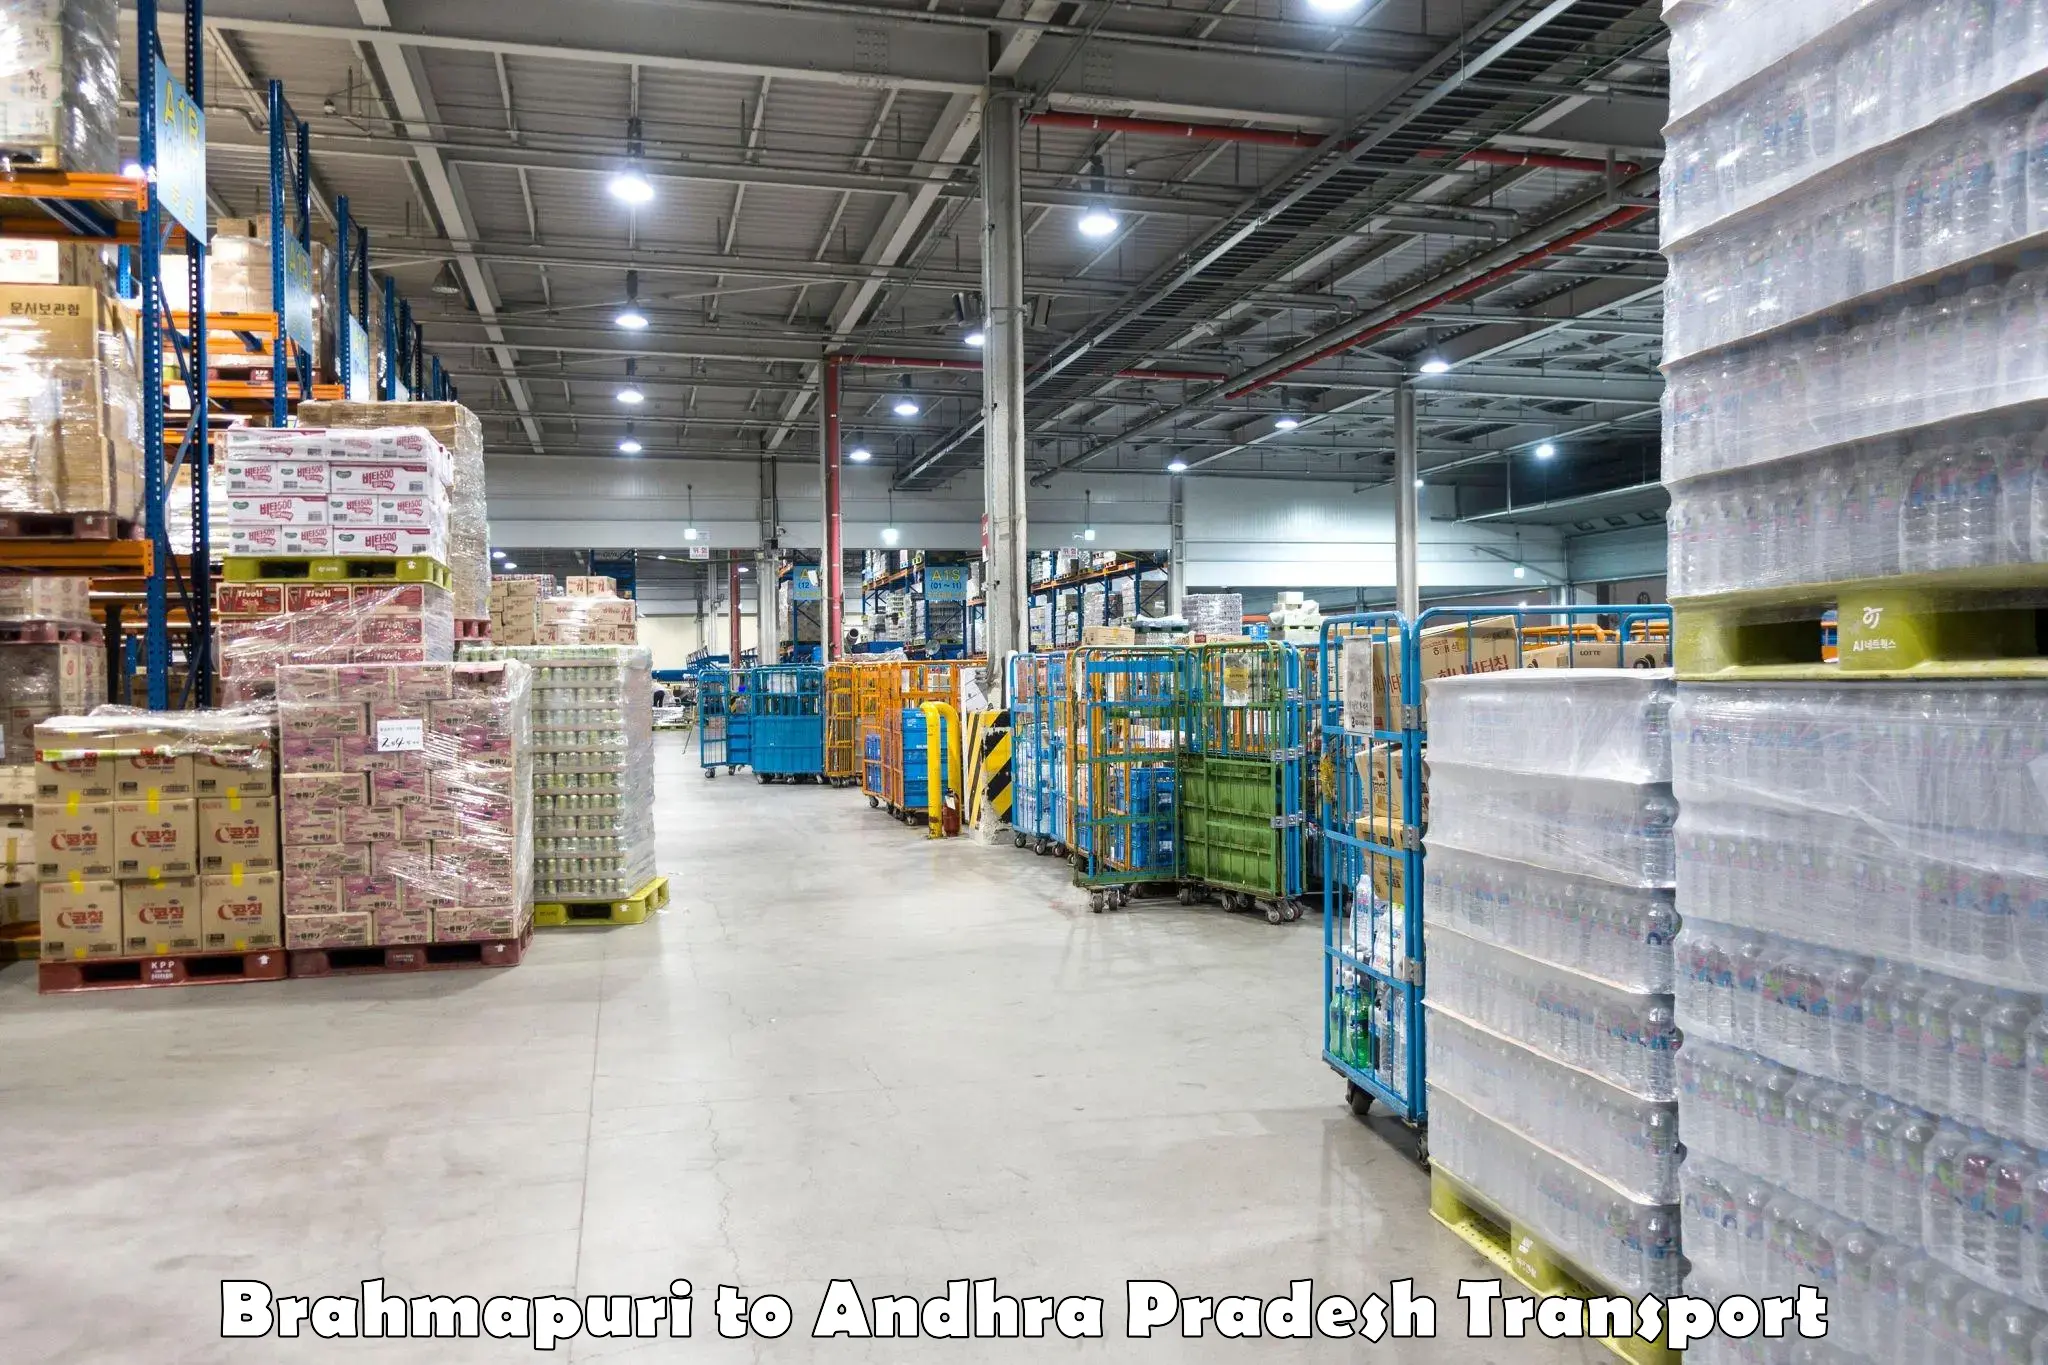 Lorry transport service Brahmapuri to Andhra Pradesh